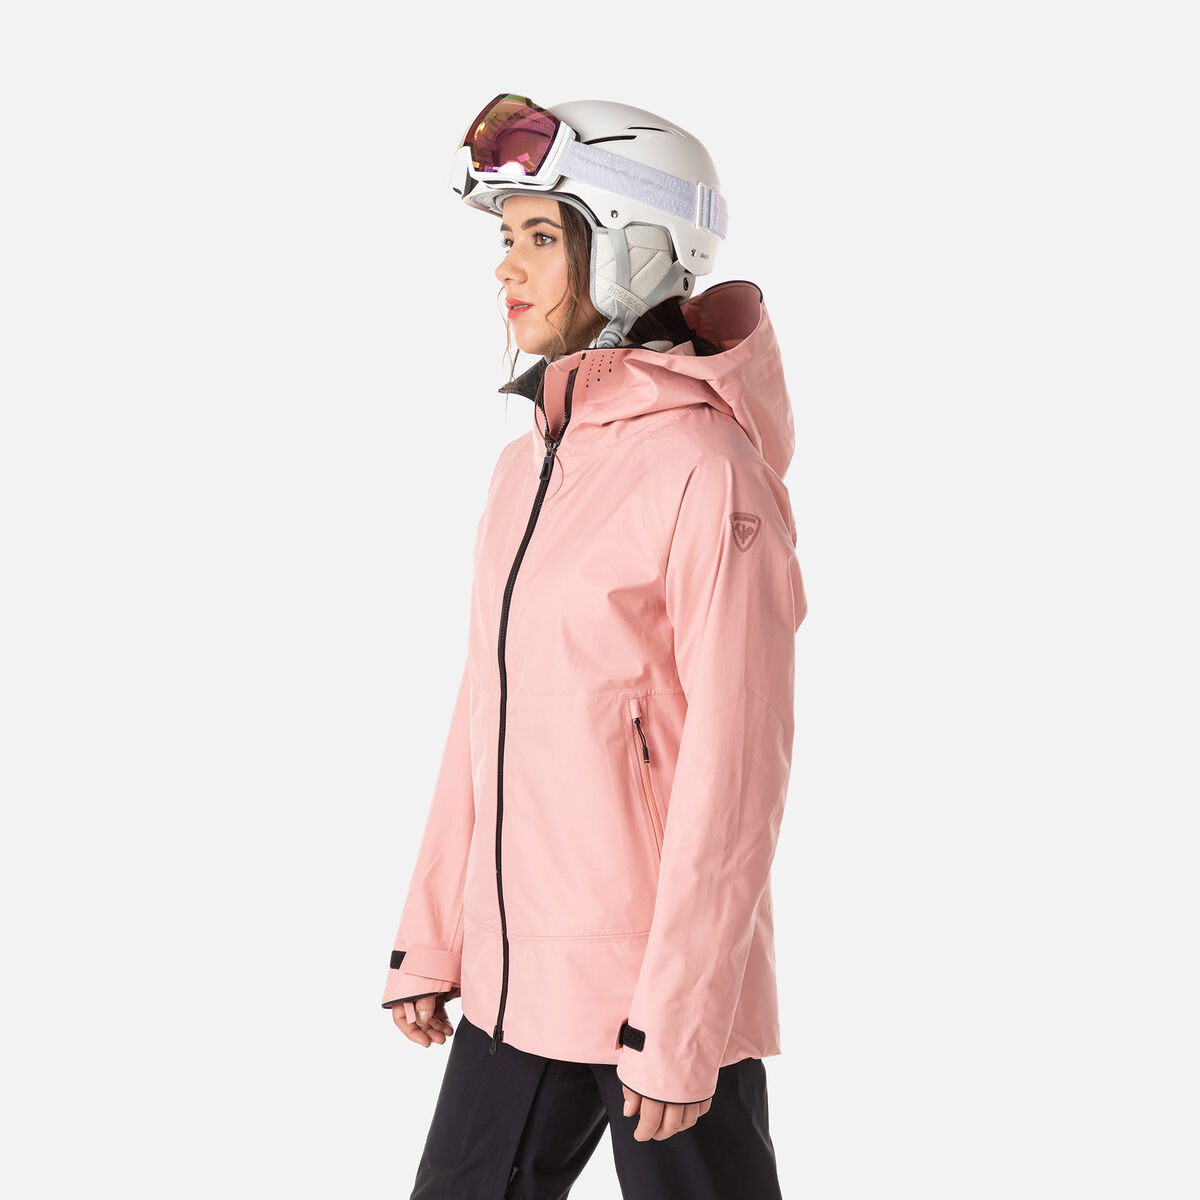 Veste de Ski Femme 3 en 1 Amovible Impermeable Coupe-vent Randonnee  Doublure Polaire - Rose beige